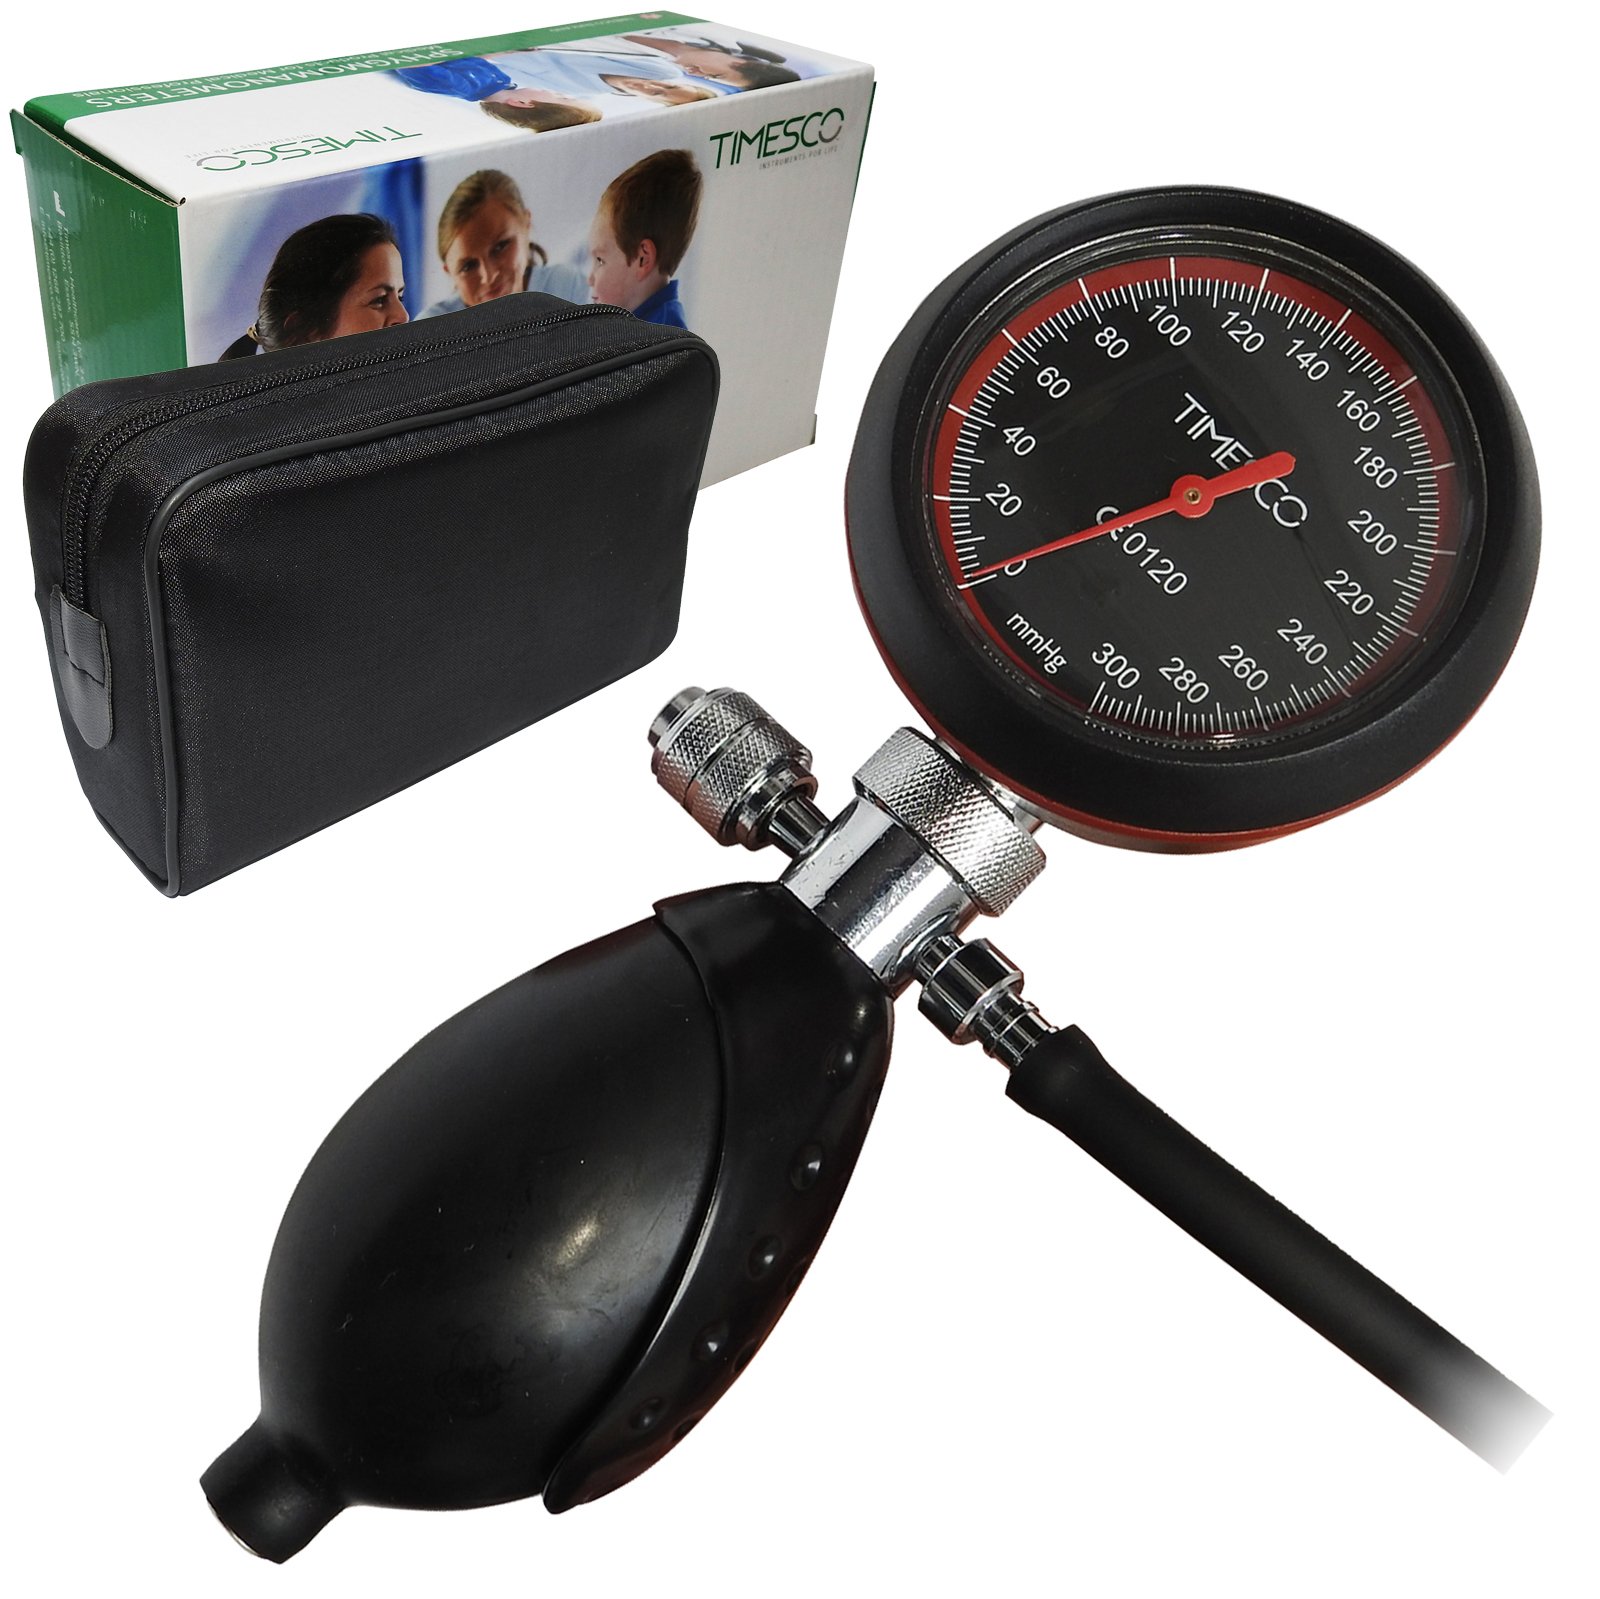 Timesco Blutdruckmessgerät Topaz Aneroid Professionelles Blutdruckmessgerät, mit Tragetasche